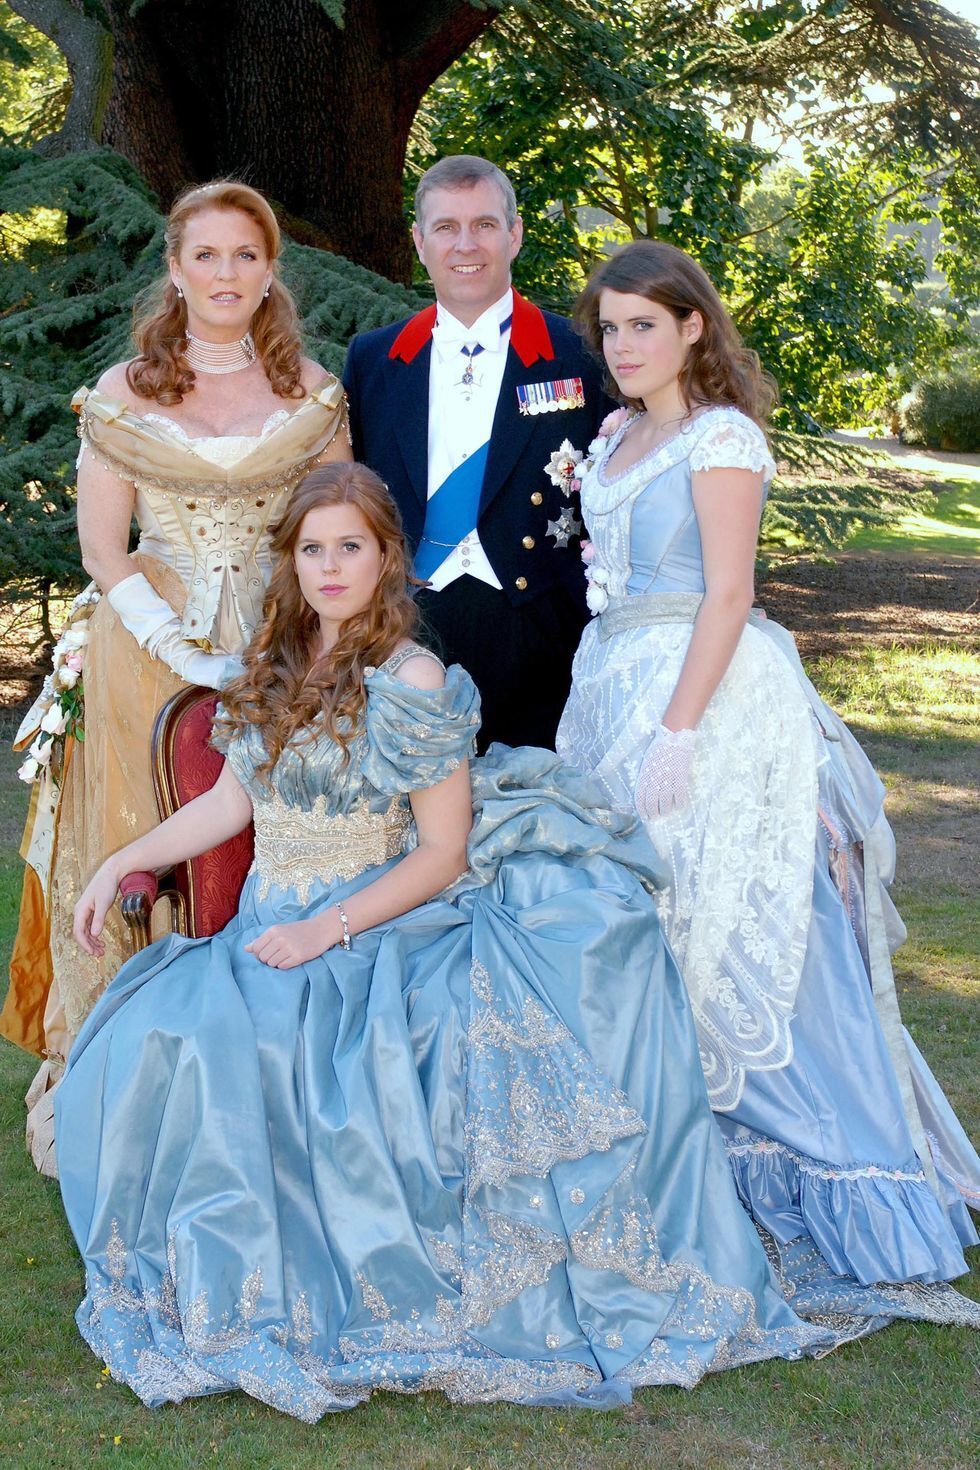 Кейт Миддлтон в образе вампира, а принцесса Беатрис в костюме кота. 15 фото членов королевской семьи, которые вас удивят